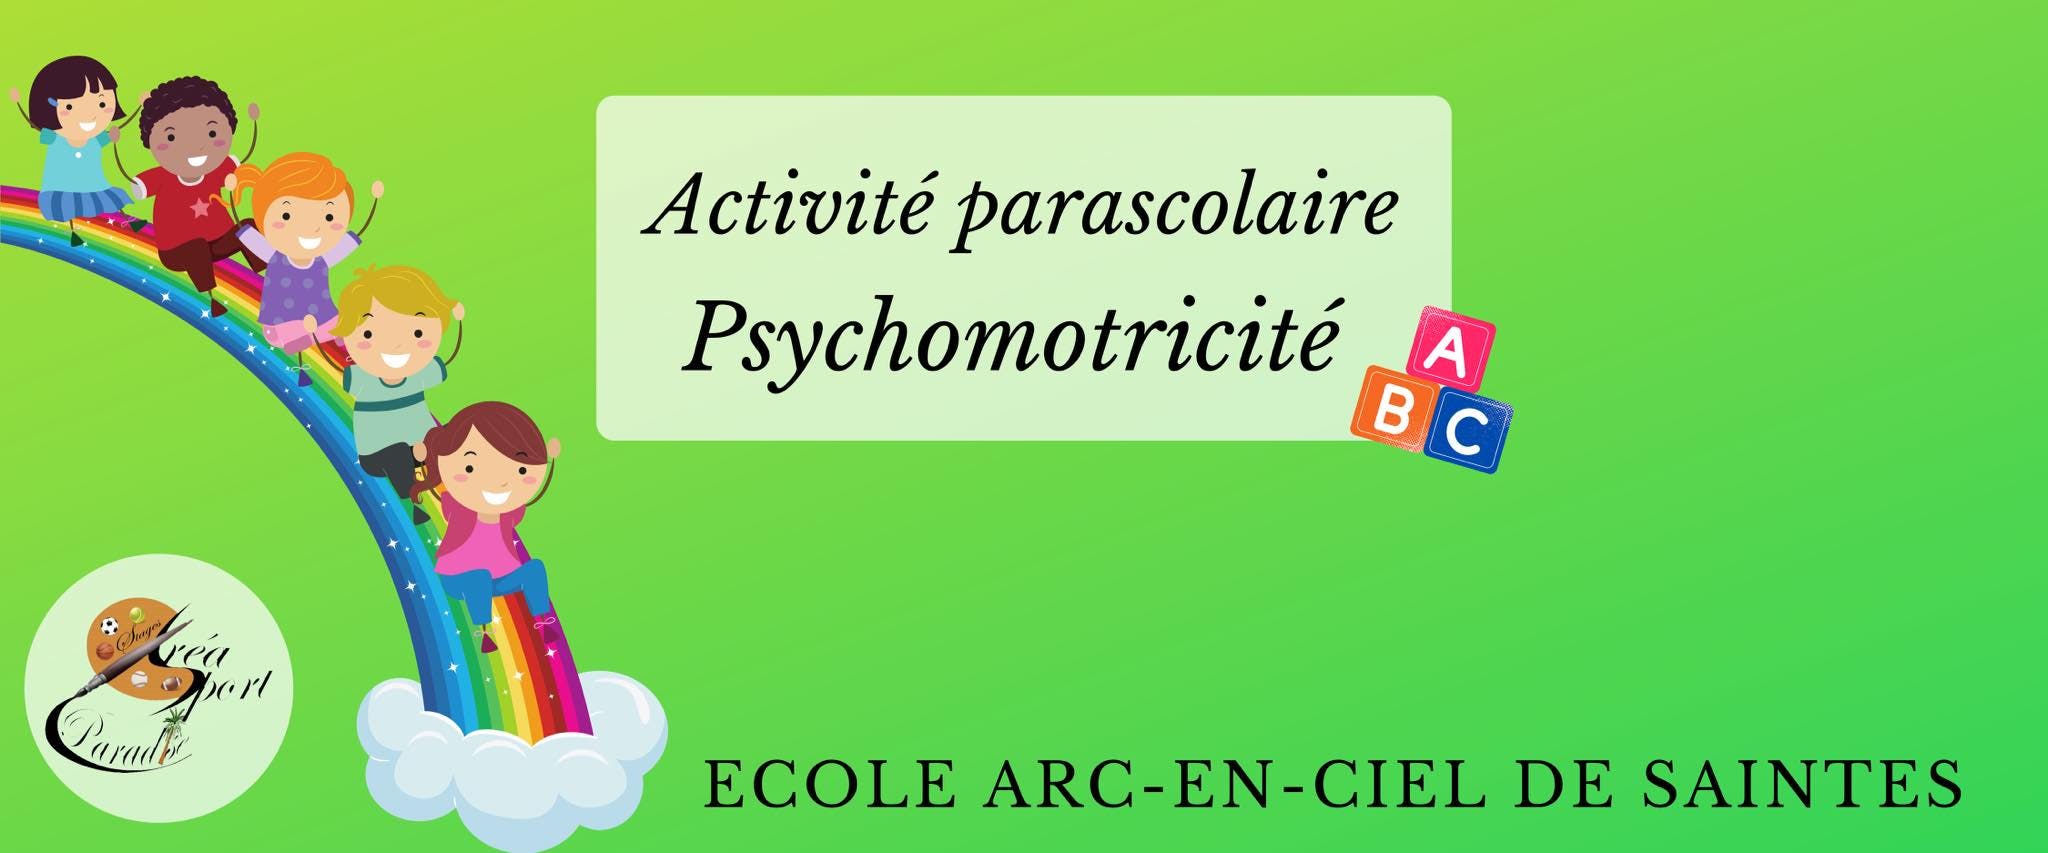 Parascolaires Ecole de Saintes - 15h20 MARDI- Psychomotricité